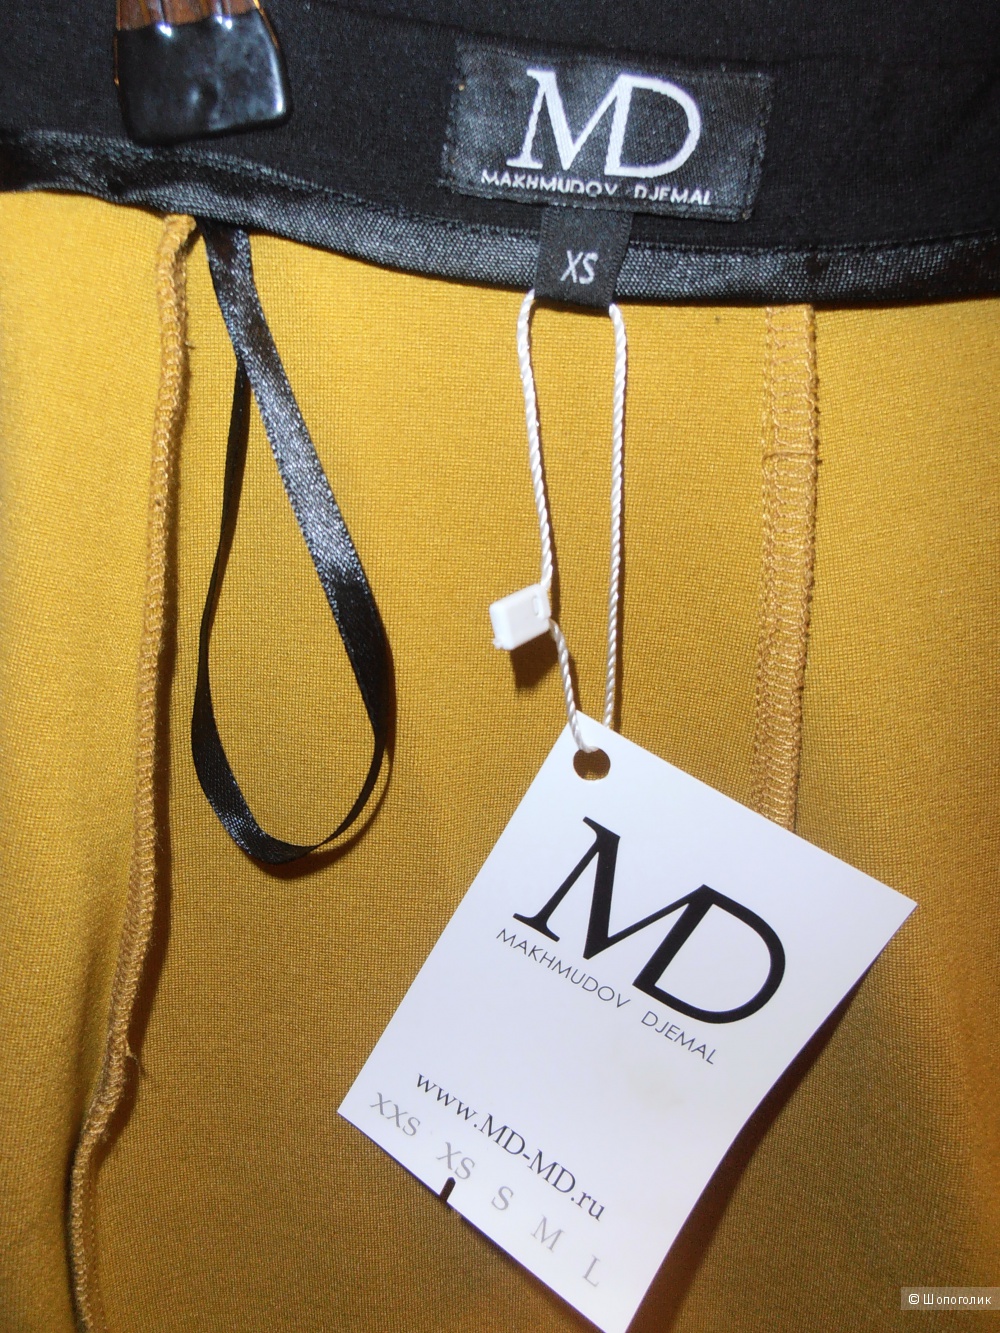 Пристрою новую дизайнерскую юбку-карандаш из коллекции Джемала Махмудова (MD).